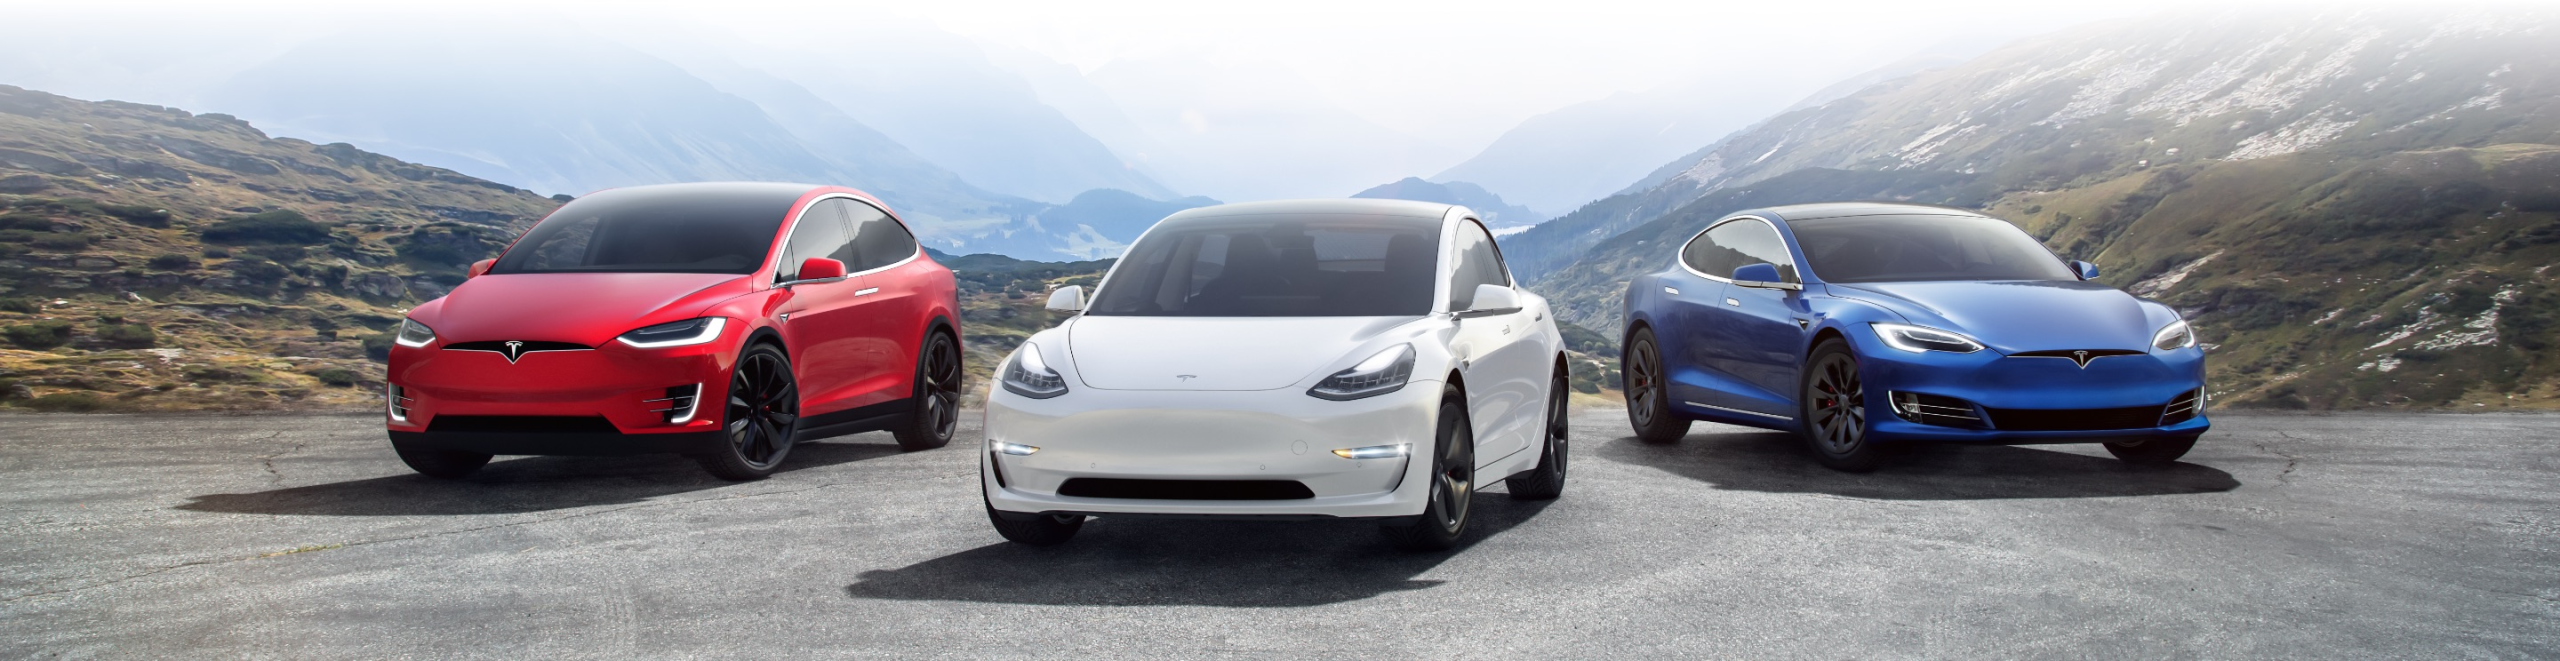 „Sam naprawiam samochód” – Tesla dzieli się wiedzą za darmo – iMagazine